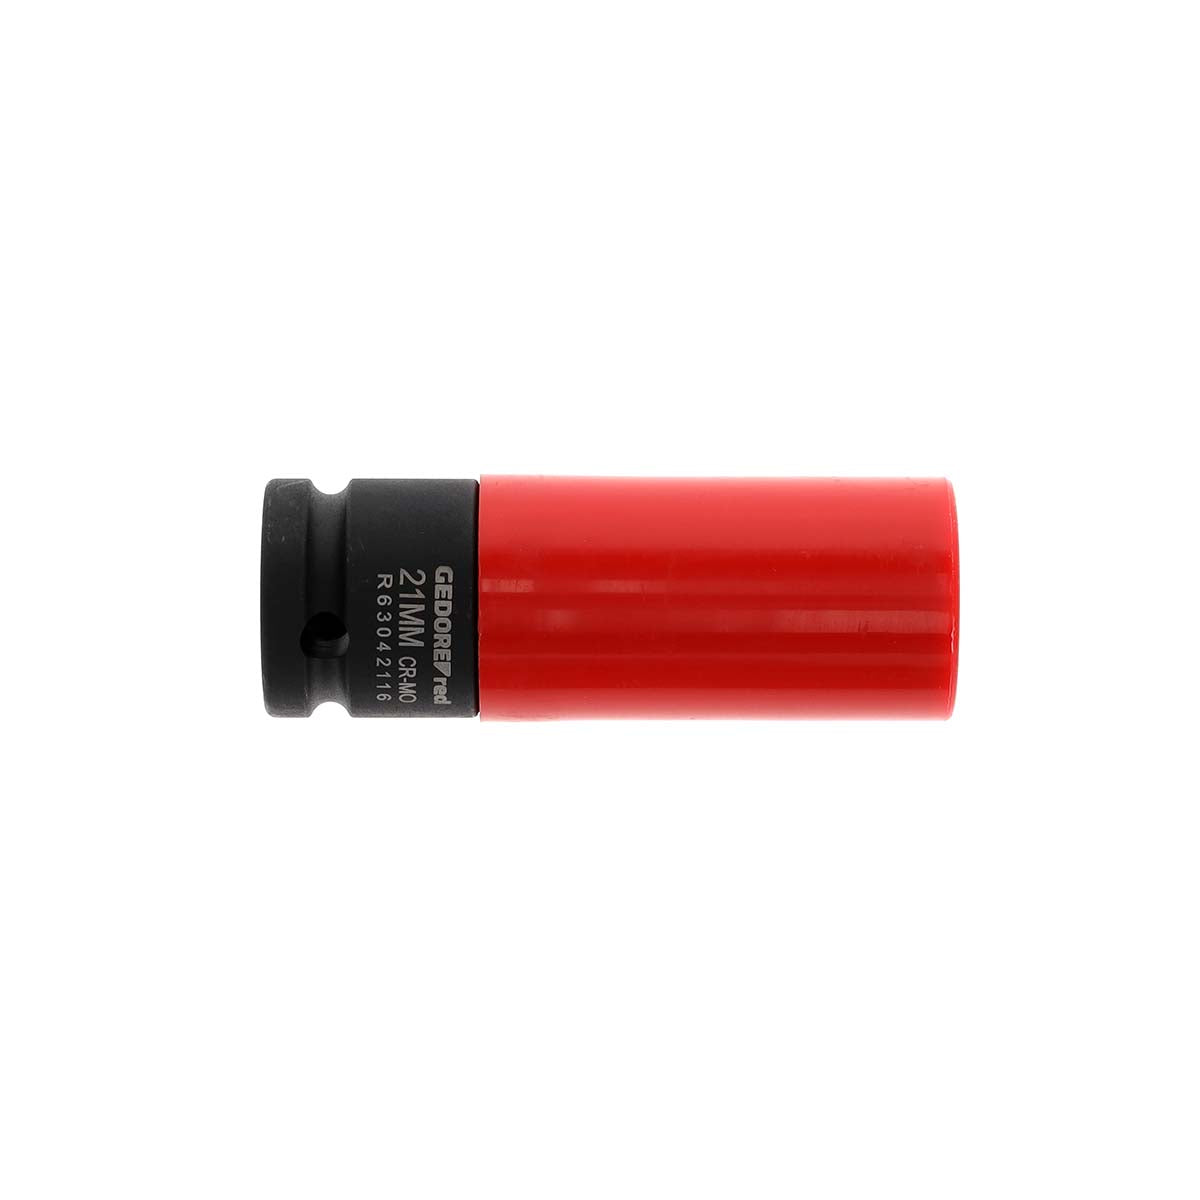 GEDORE rouge R63042116 - Douille à chocs 1/2" 21 mm manchon de protection (3300587)